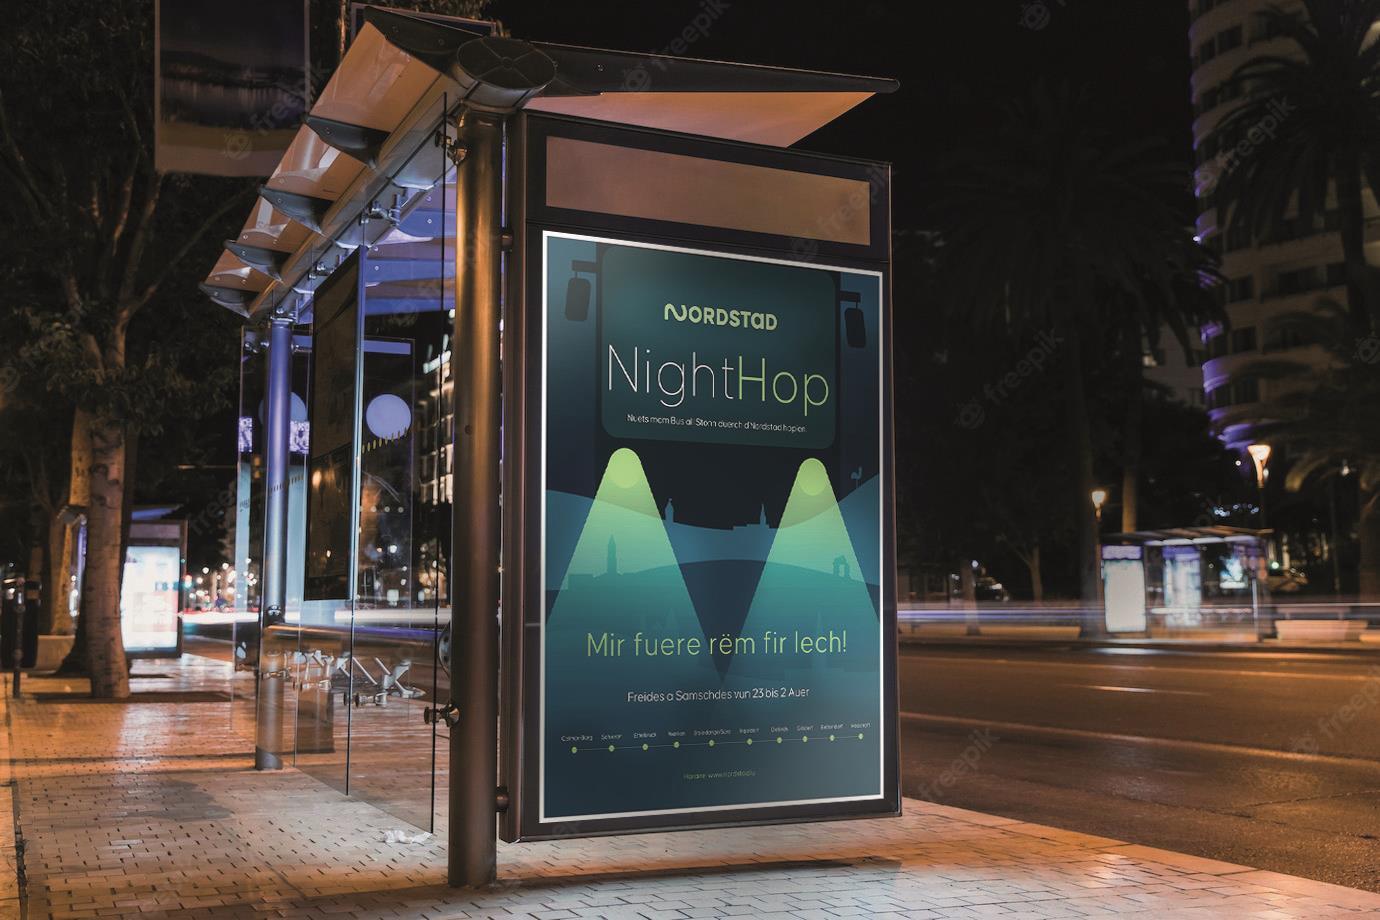 Nighthop - NightHop - gratis Nachtbus der Nordstad